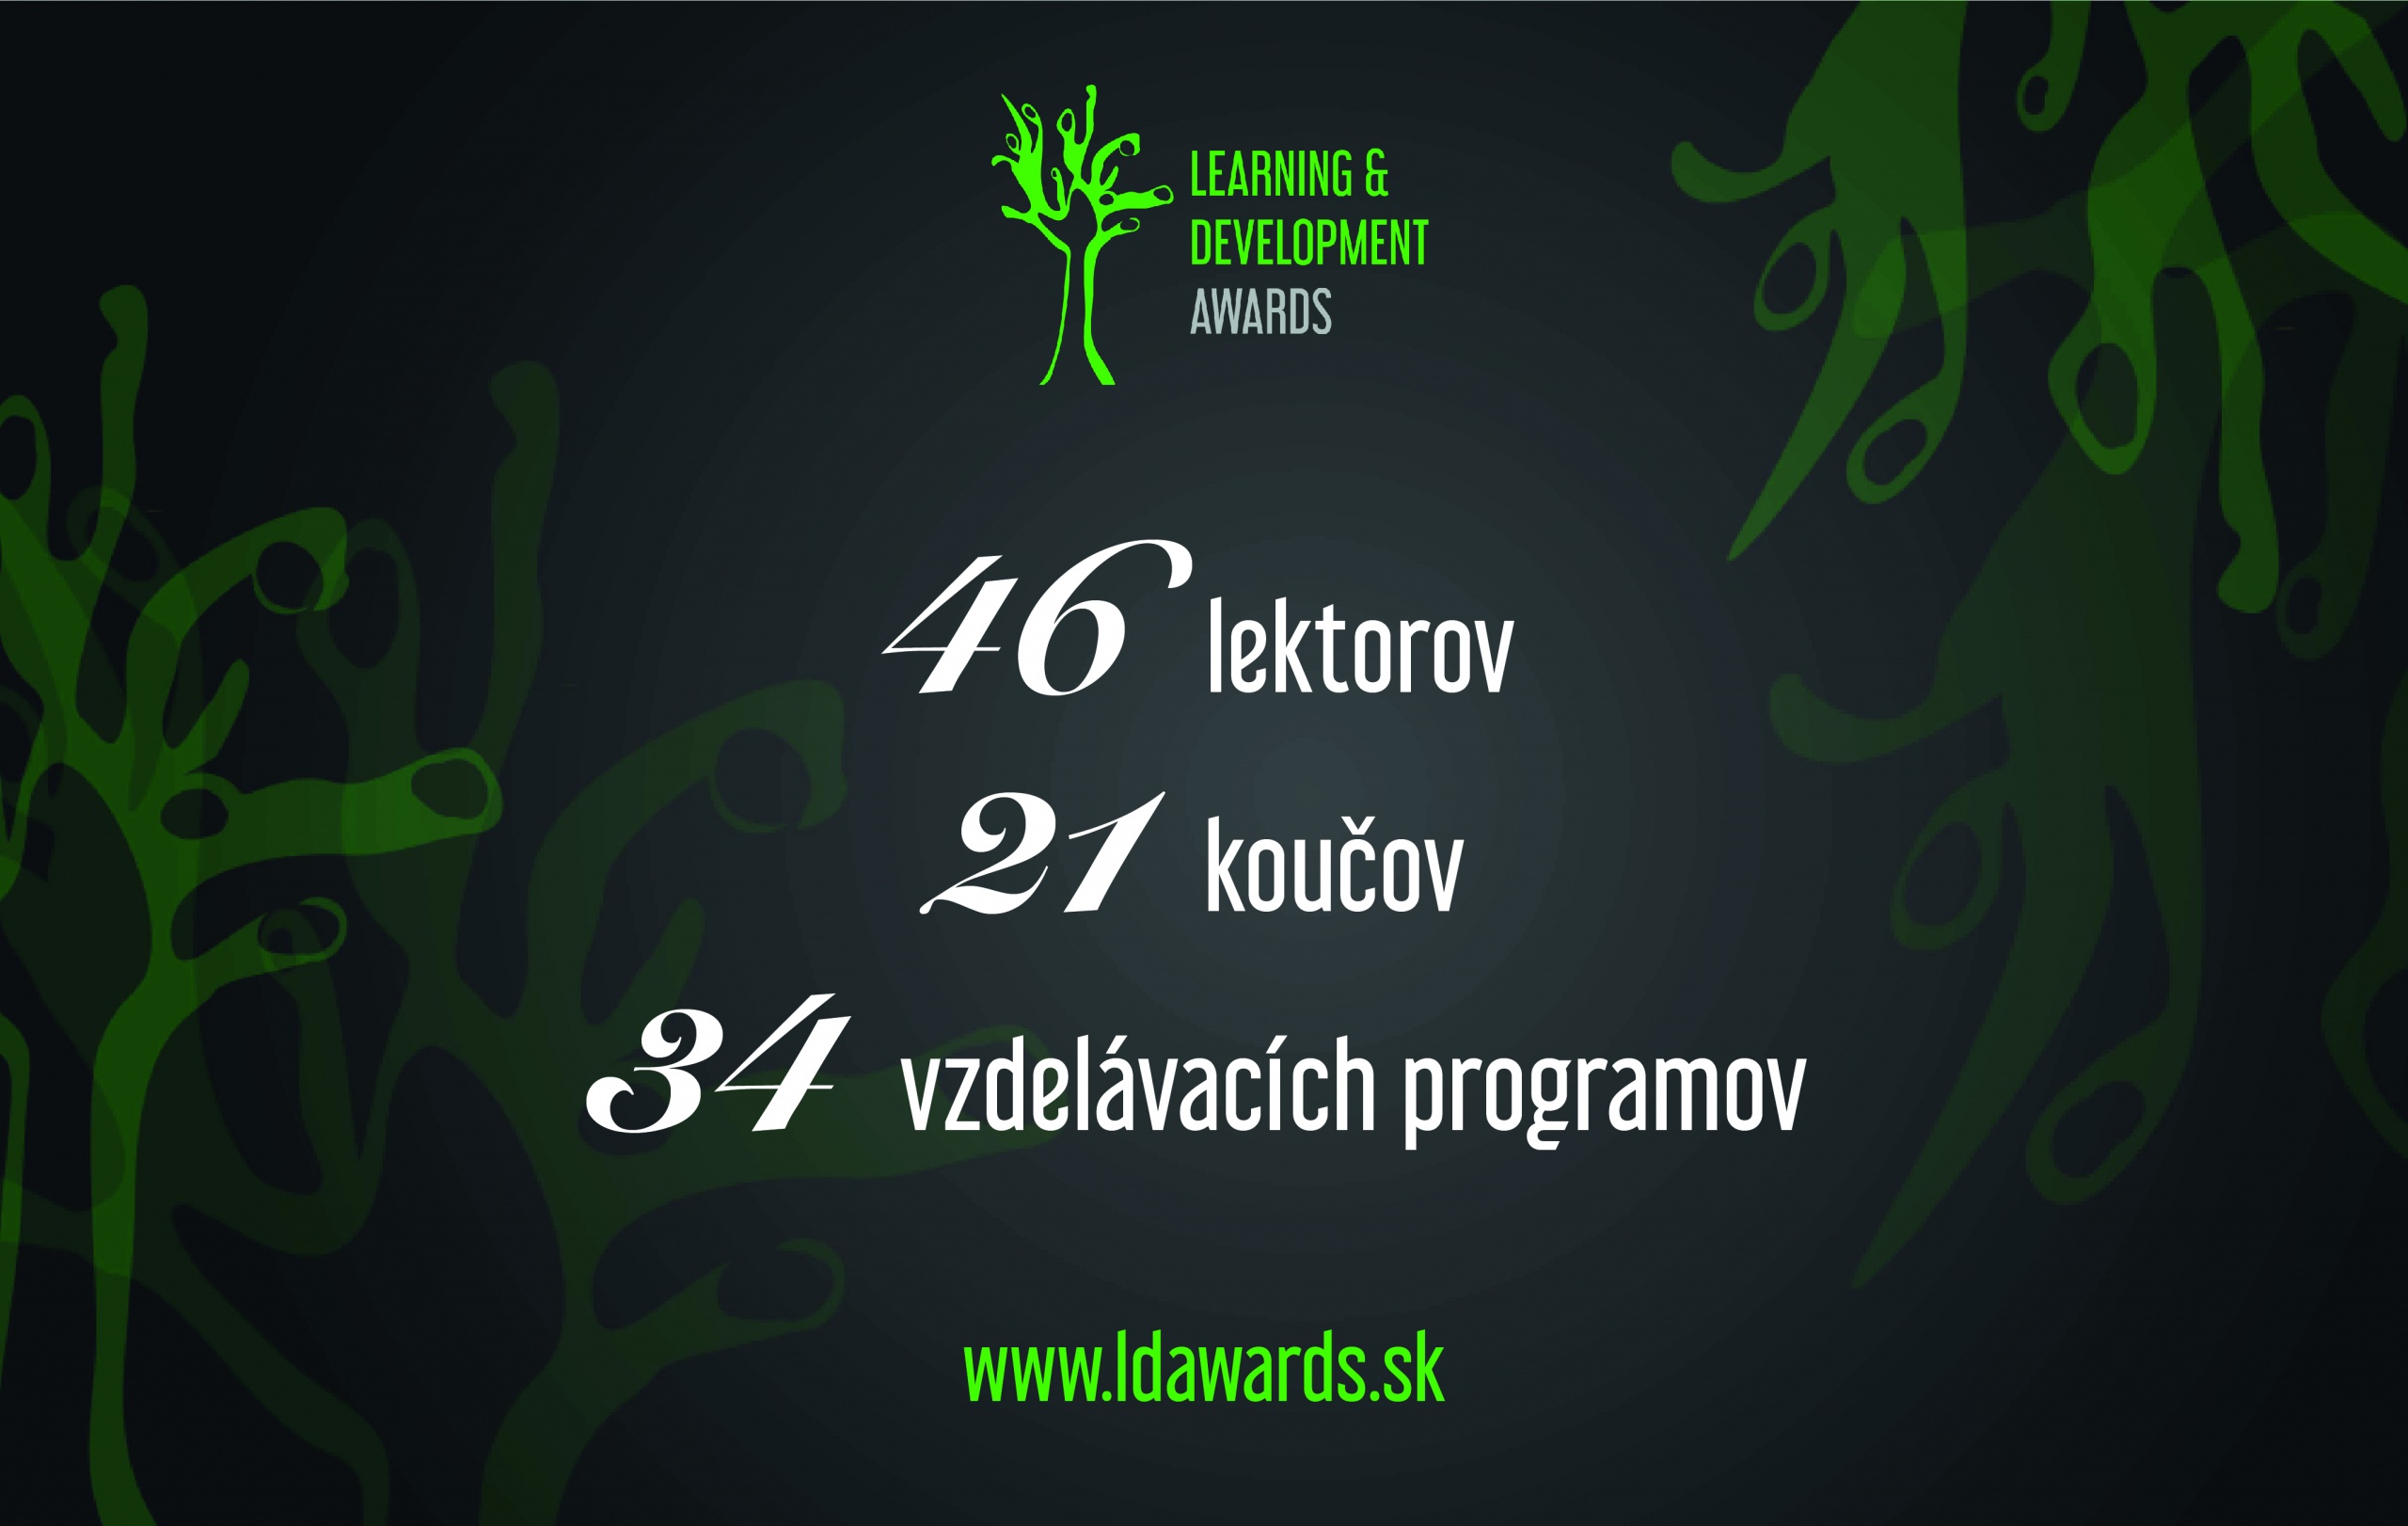 Learning & Development Awards 2021: Porota najprestížnejšej ankety vzdelávania na Slovensku bude vyberať spomedzi 101 nominovaných